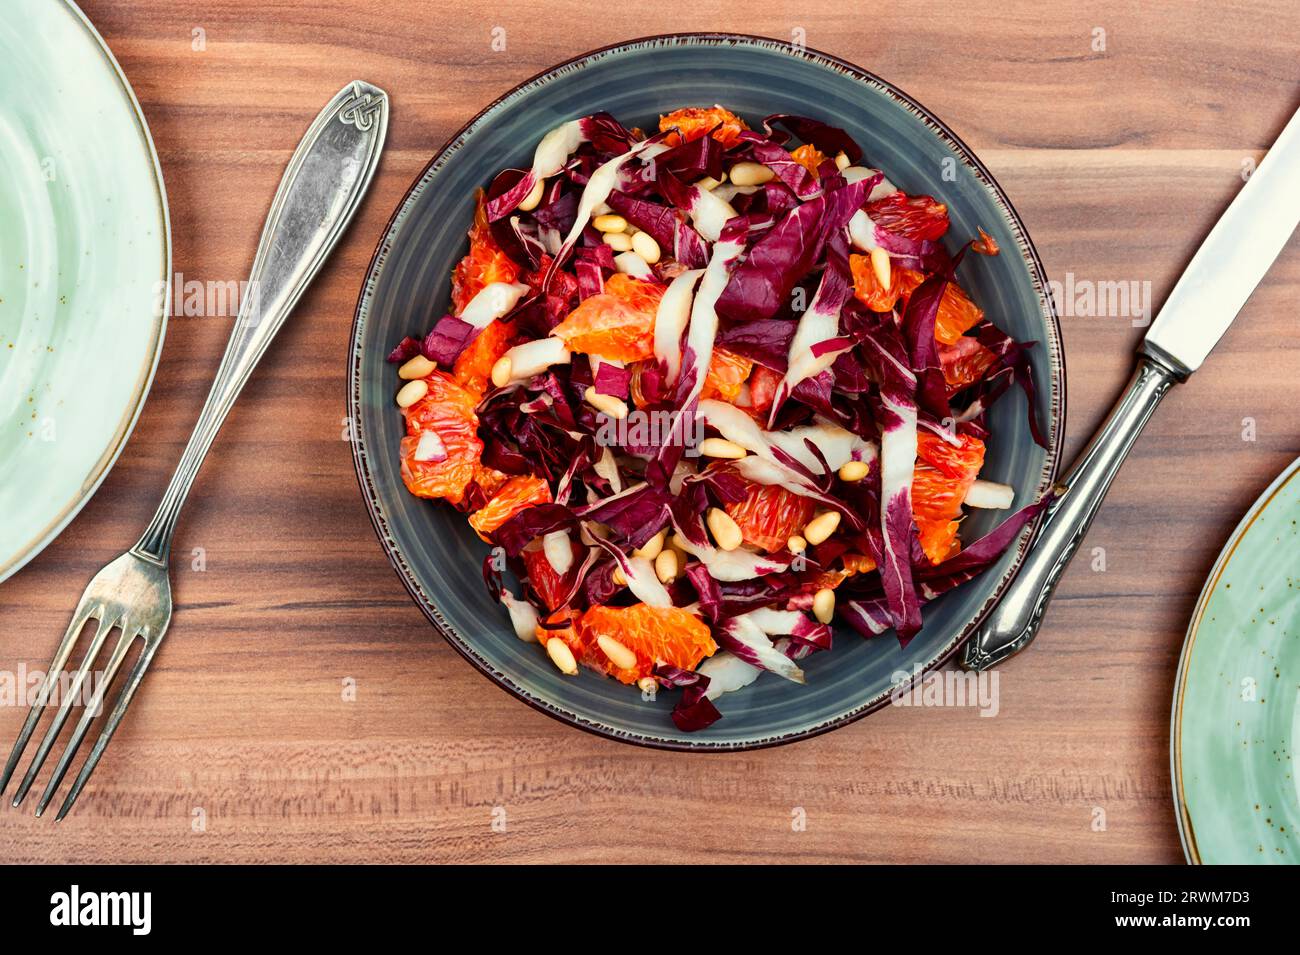 Salade avec chicorée rouge, pamplemousse sur une table en bois. Concept de régime alimentaire et de saine alimentation. Vue de dessus. Banque D'Images